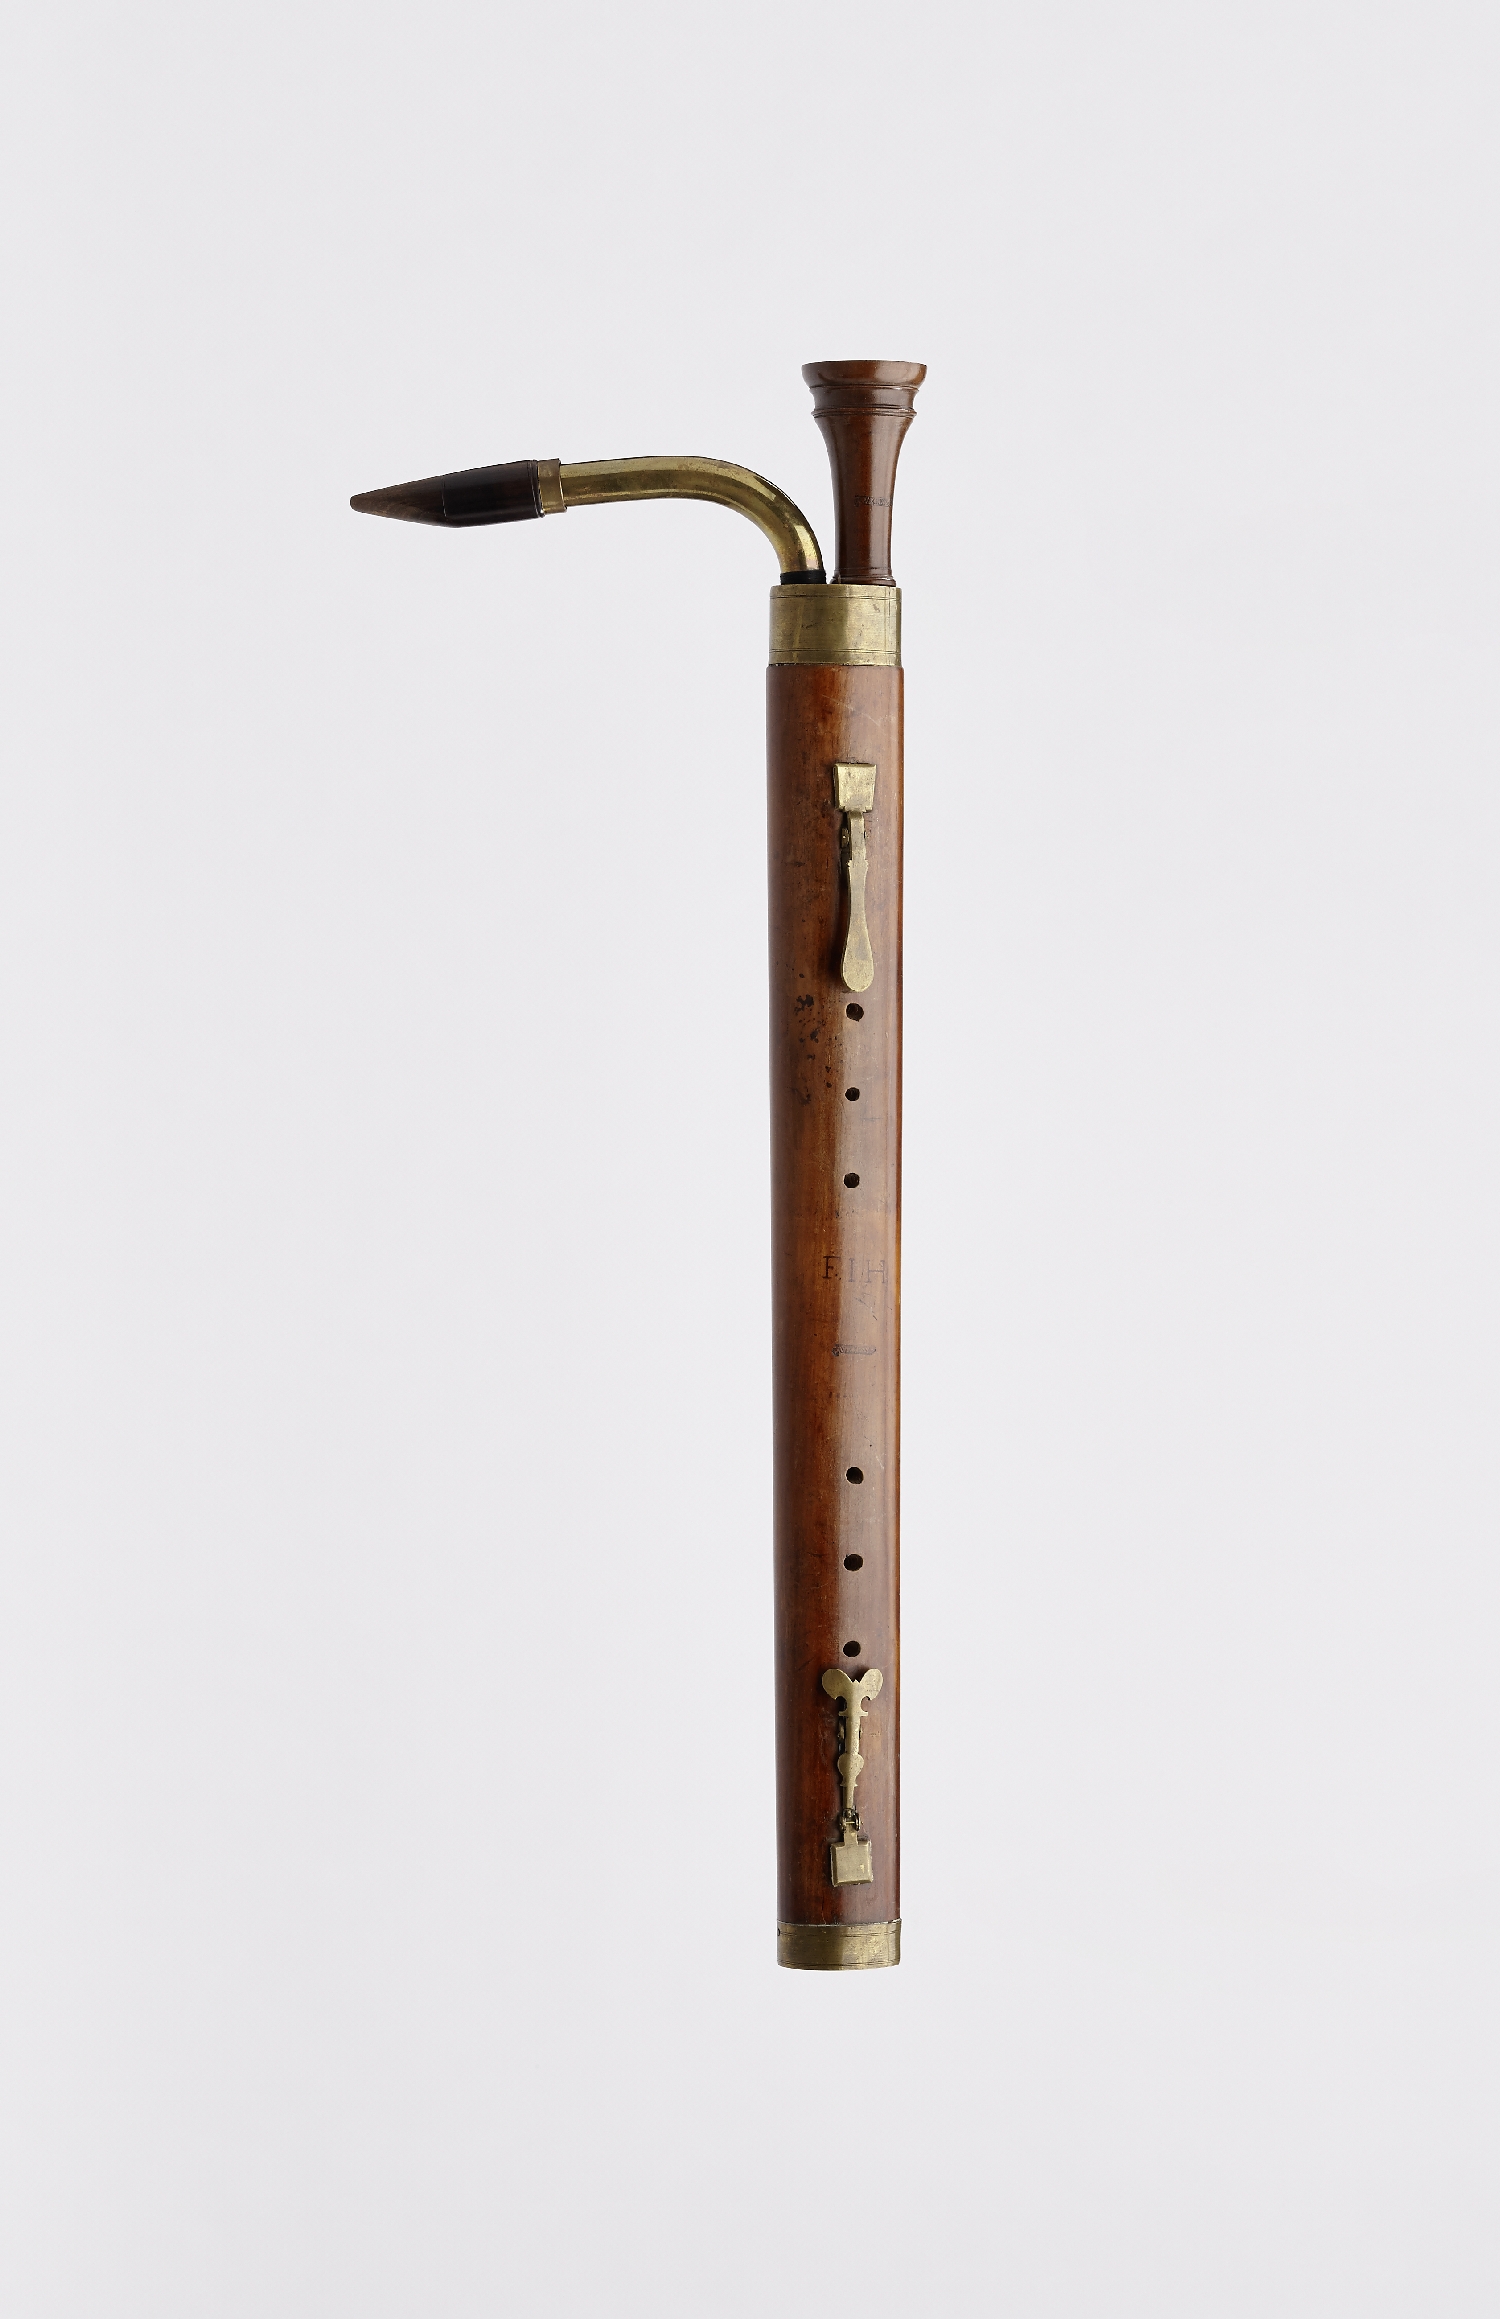 Bass shawm, W. Kress, ca. 1700, wood (pear wood?), brass, inv. no. MI 1253